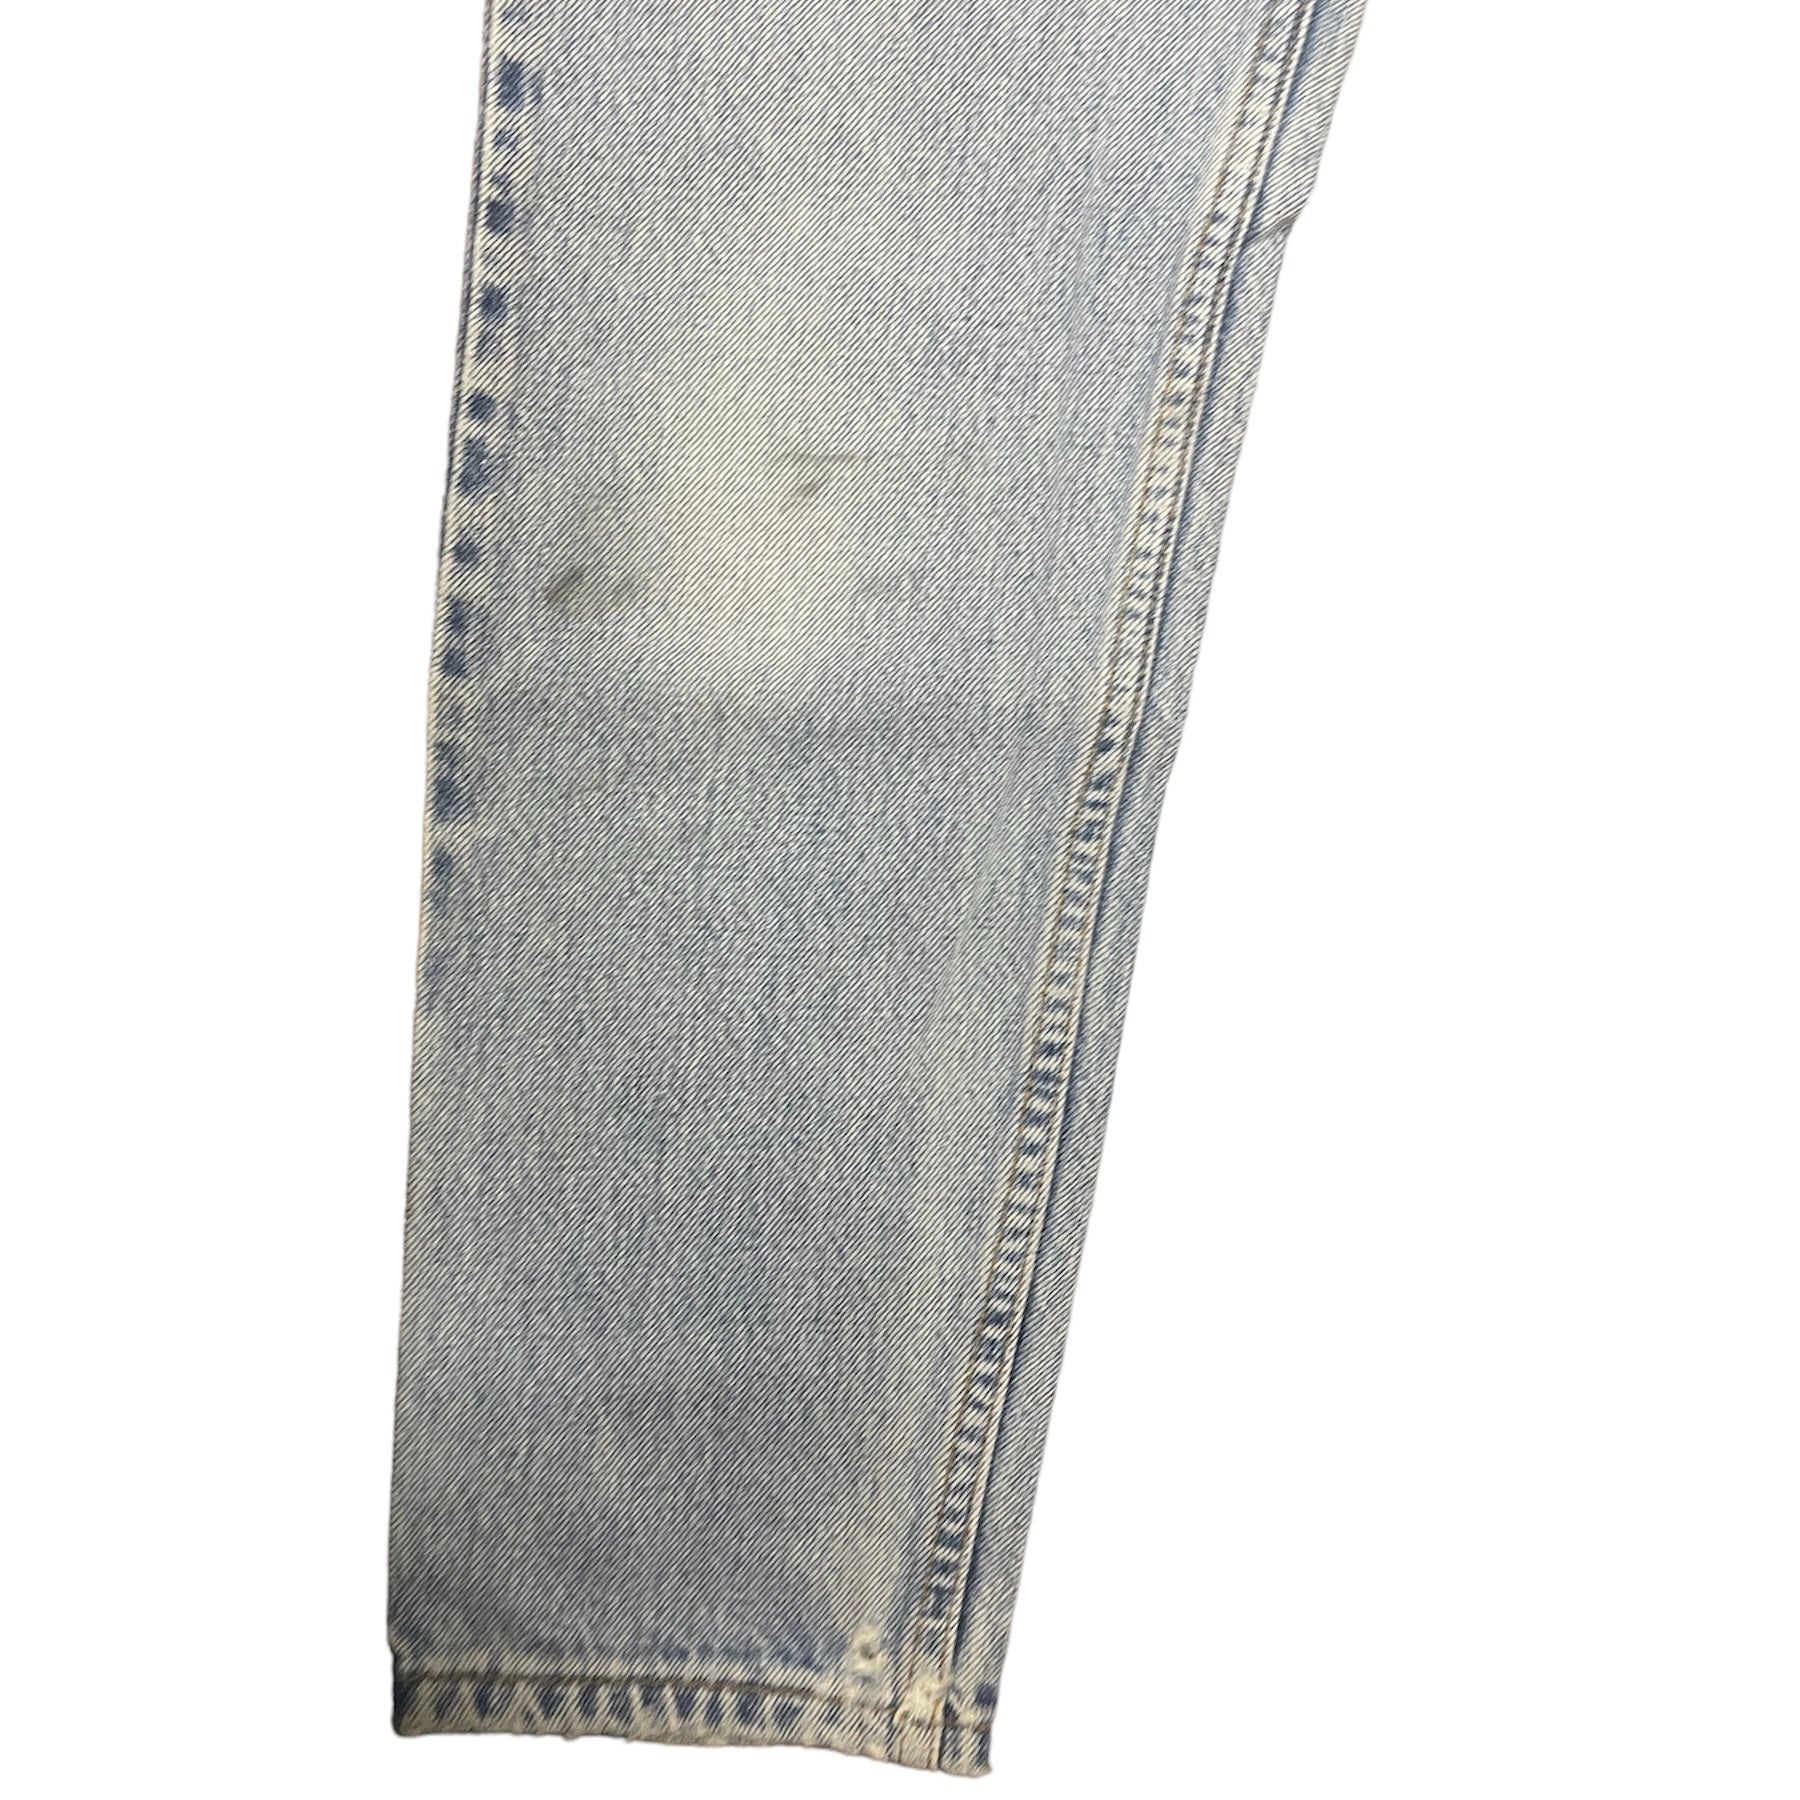 Vintage Levis 512 Jeans (W26)